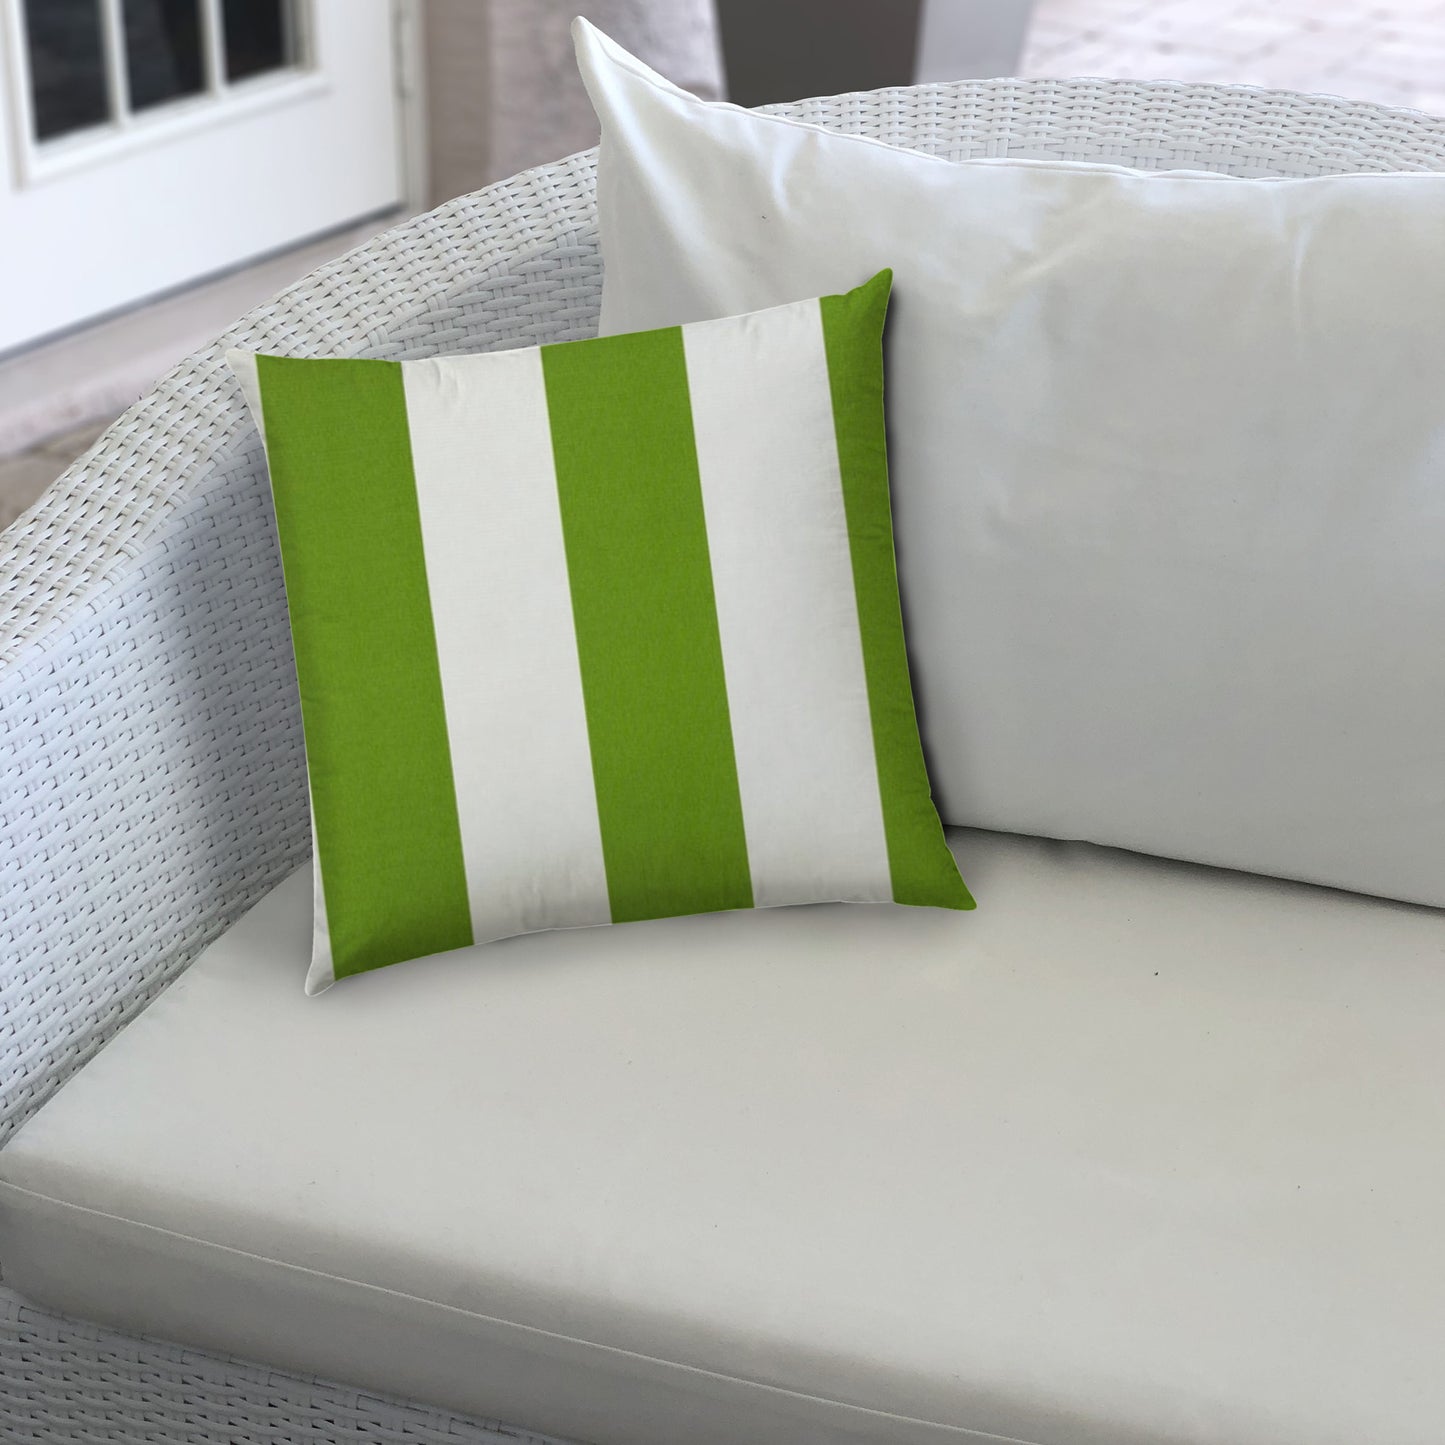 CABANA LARGE Green Indoor/Outdoor Pillow - Sewn Closure